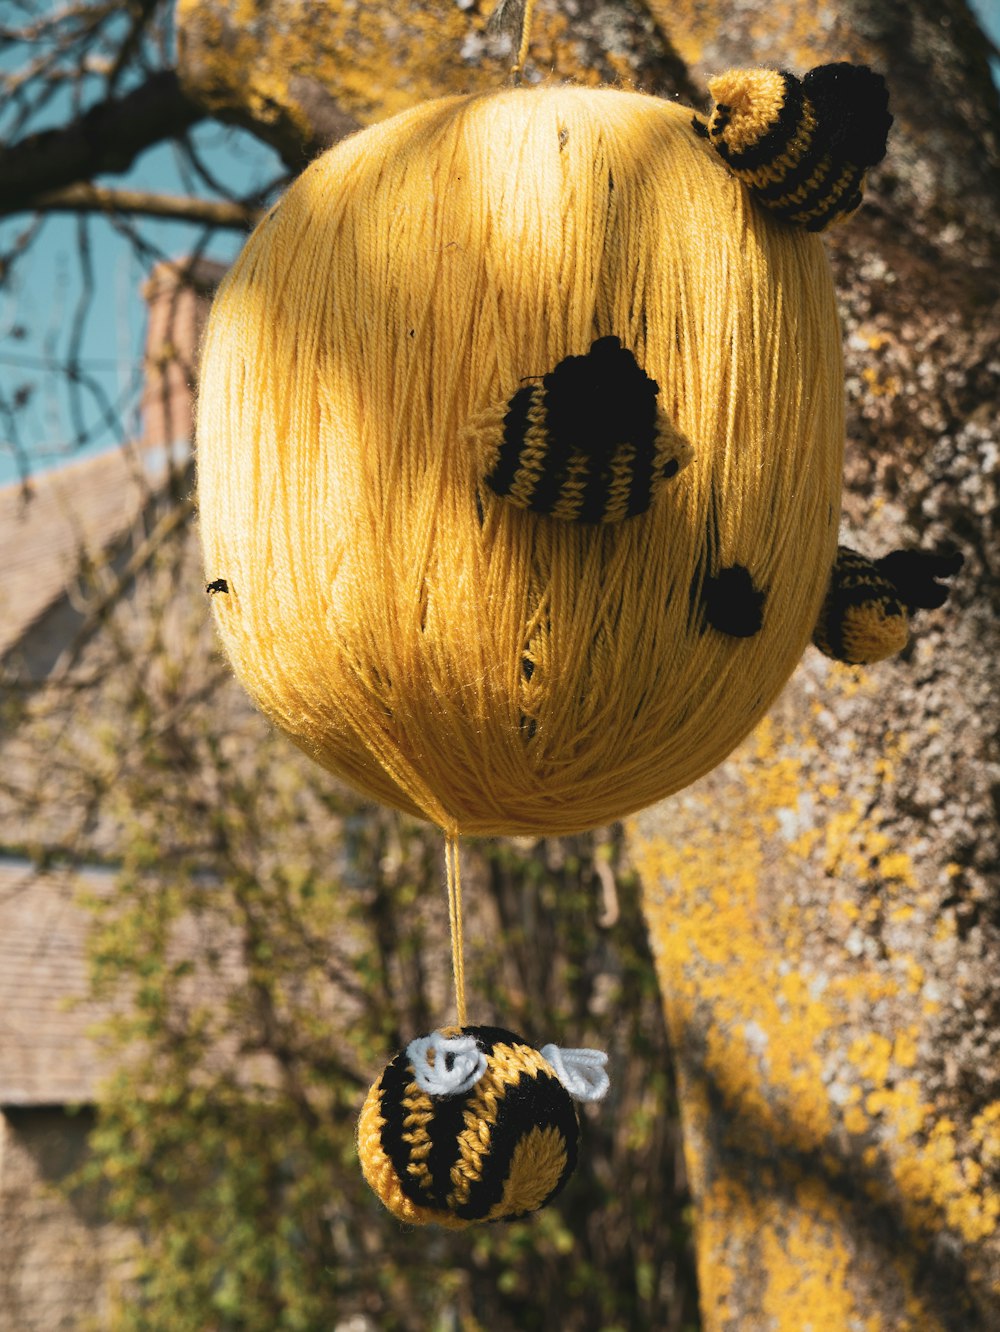 yellow and black lantern hanging on tree during daytime